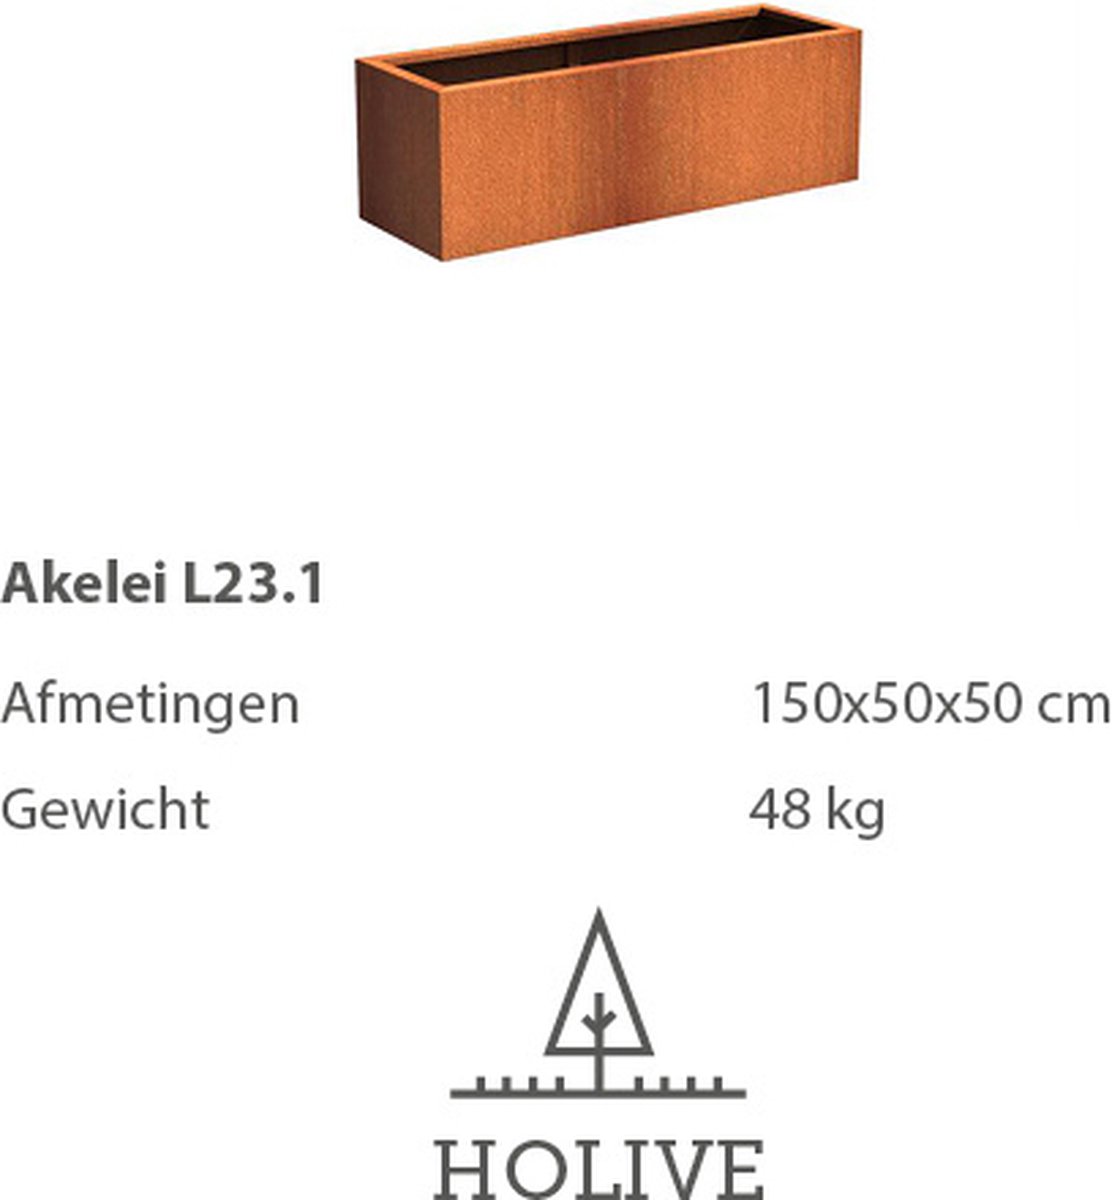 Cortenstaal Akelei L23.1 Rechthoek 150x50x50 cm. Plantenbak